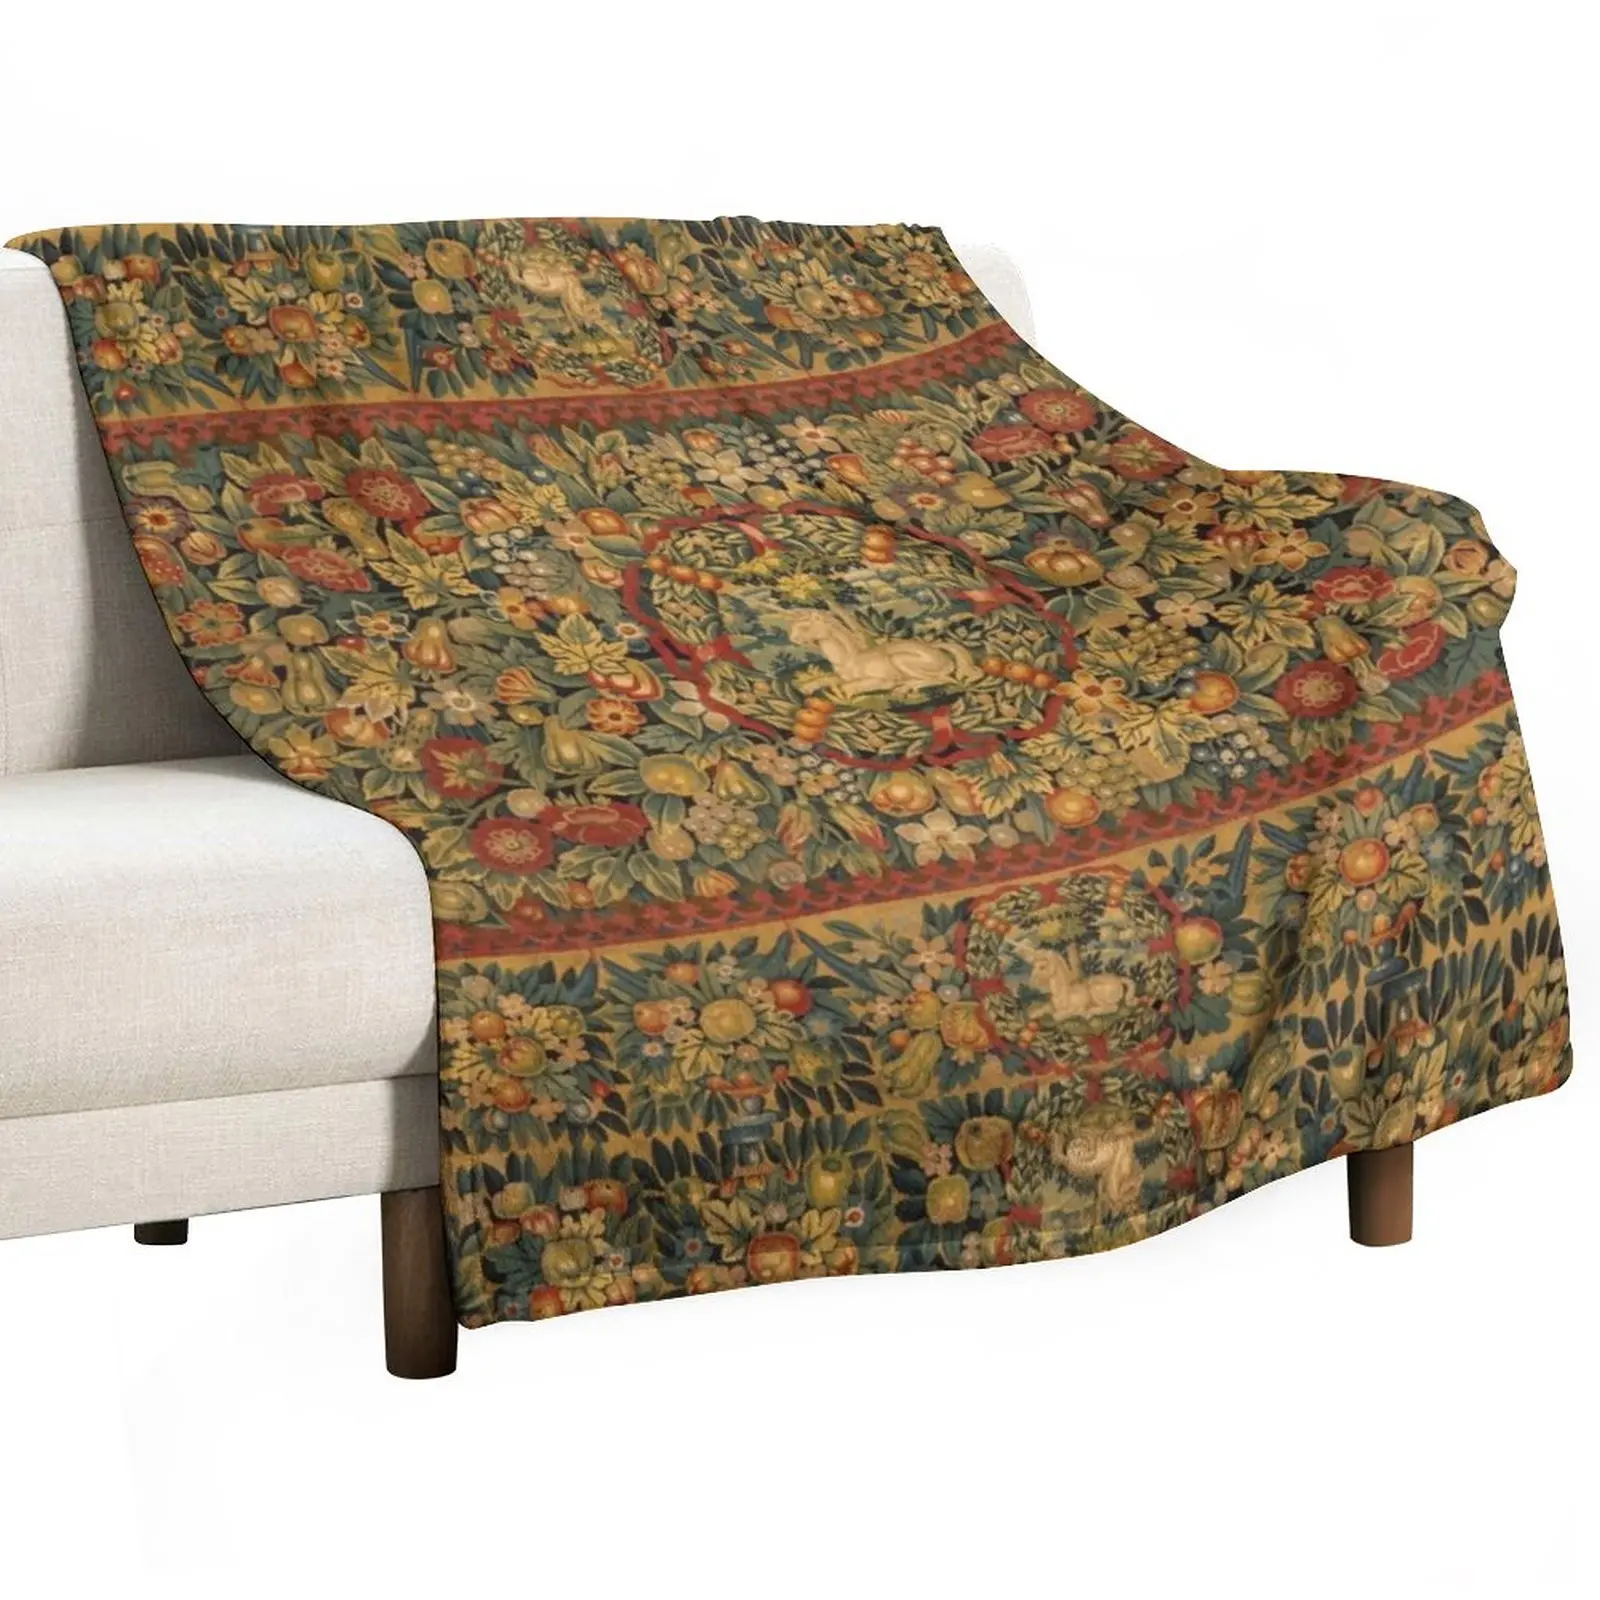 

Medieval Unicorn Floral Tapestry Throw Blanket Sleeping Bag Vintage Blankets